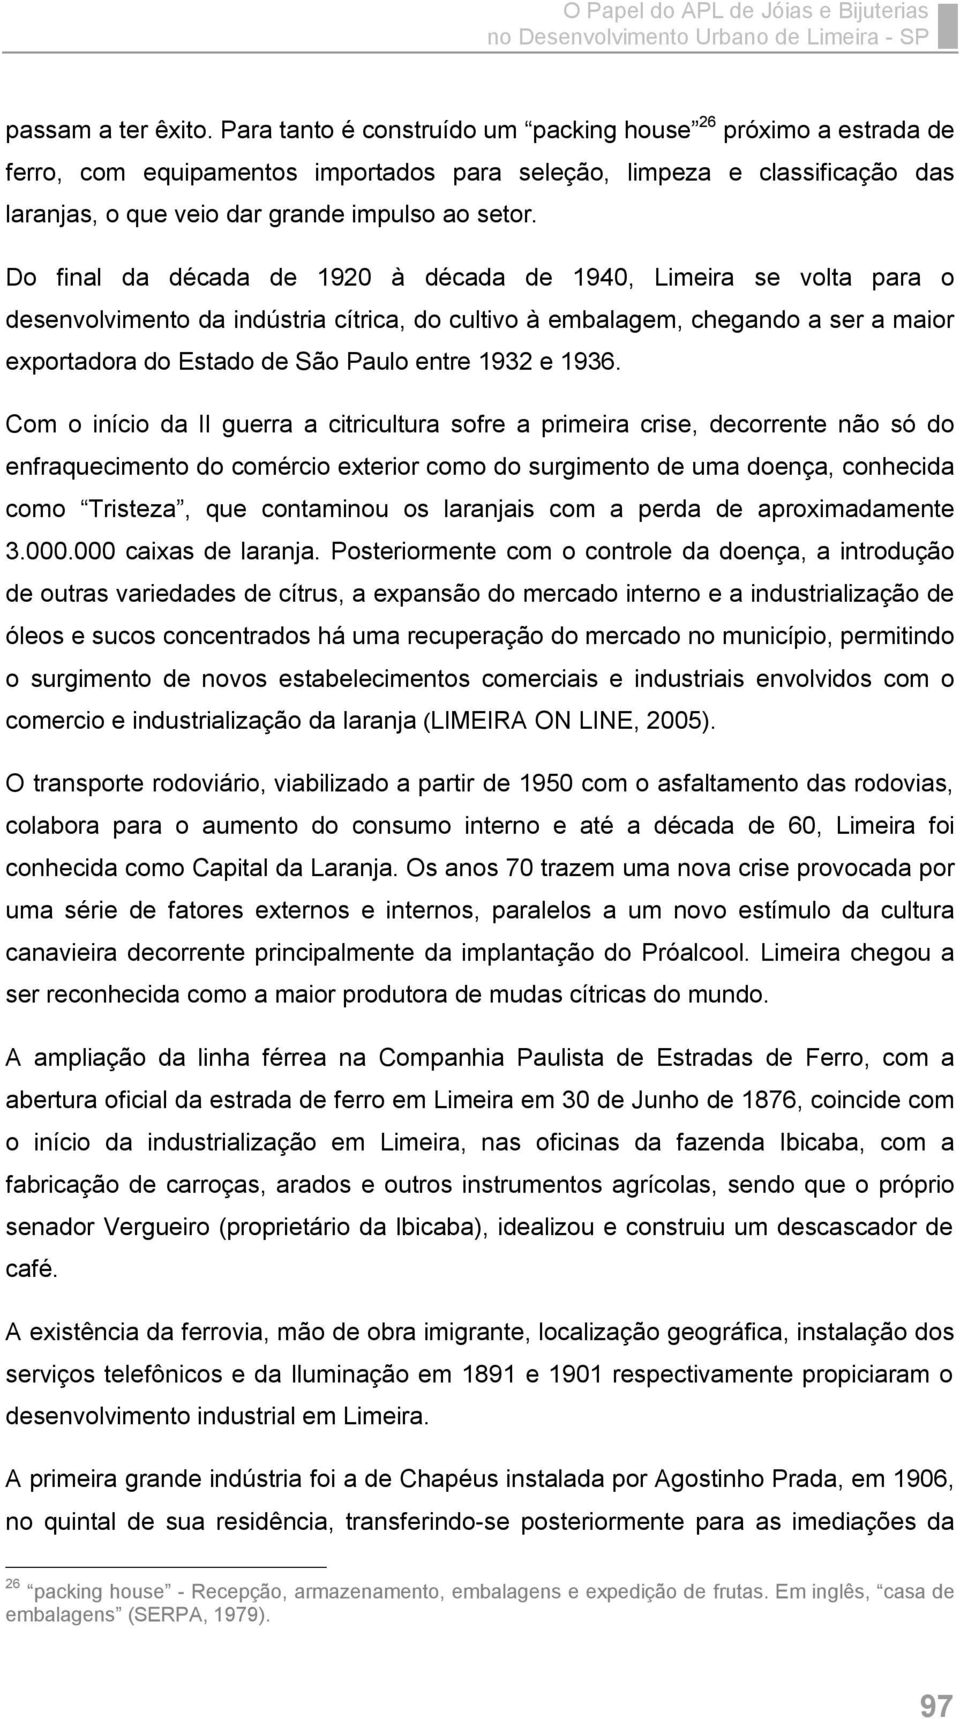 Do final da década de 1920 à década de 1940, Limeira se volta para o desenvolvimento da indústria cítrica, do cultivo à embalagem, chegando a ser a maior exportadora do Estado de São Paulo entre 1932